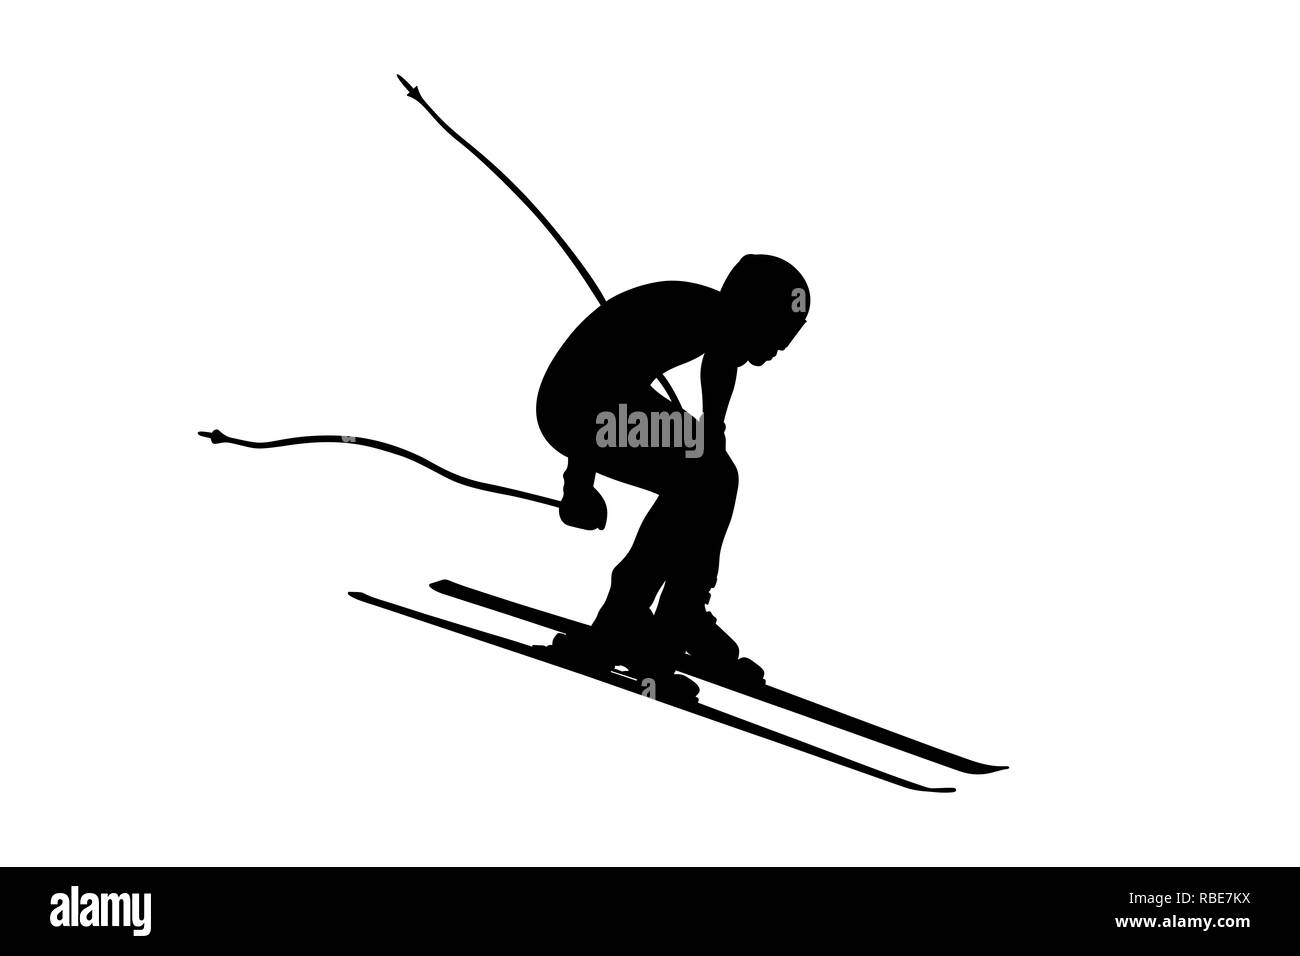 Ski alpin hommes ski jump vector illustration Banque D'Images